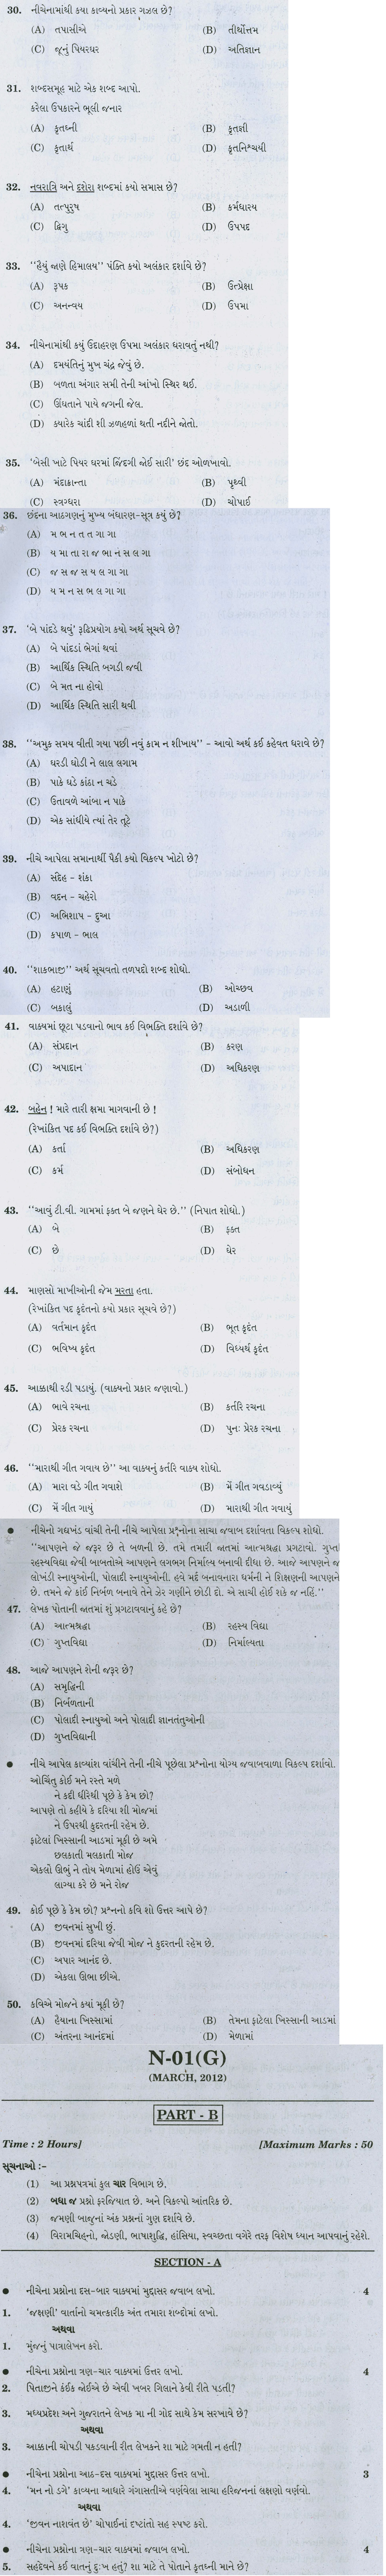 Gujarat Board Class X Question Papers (Gujarati Medium) 2012 - Social Studies